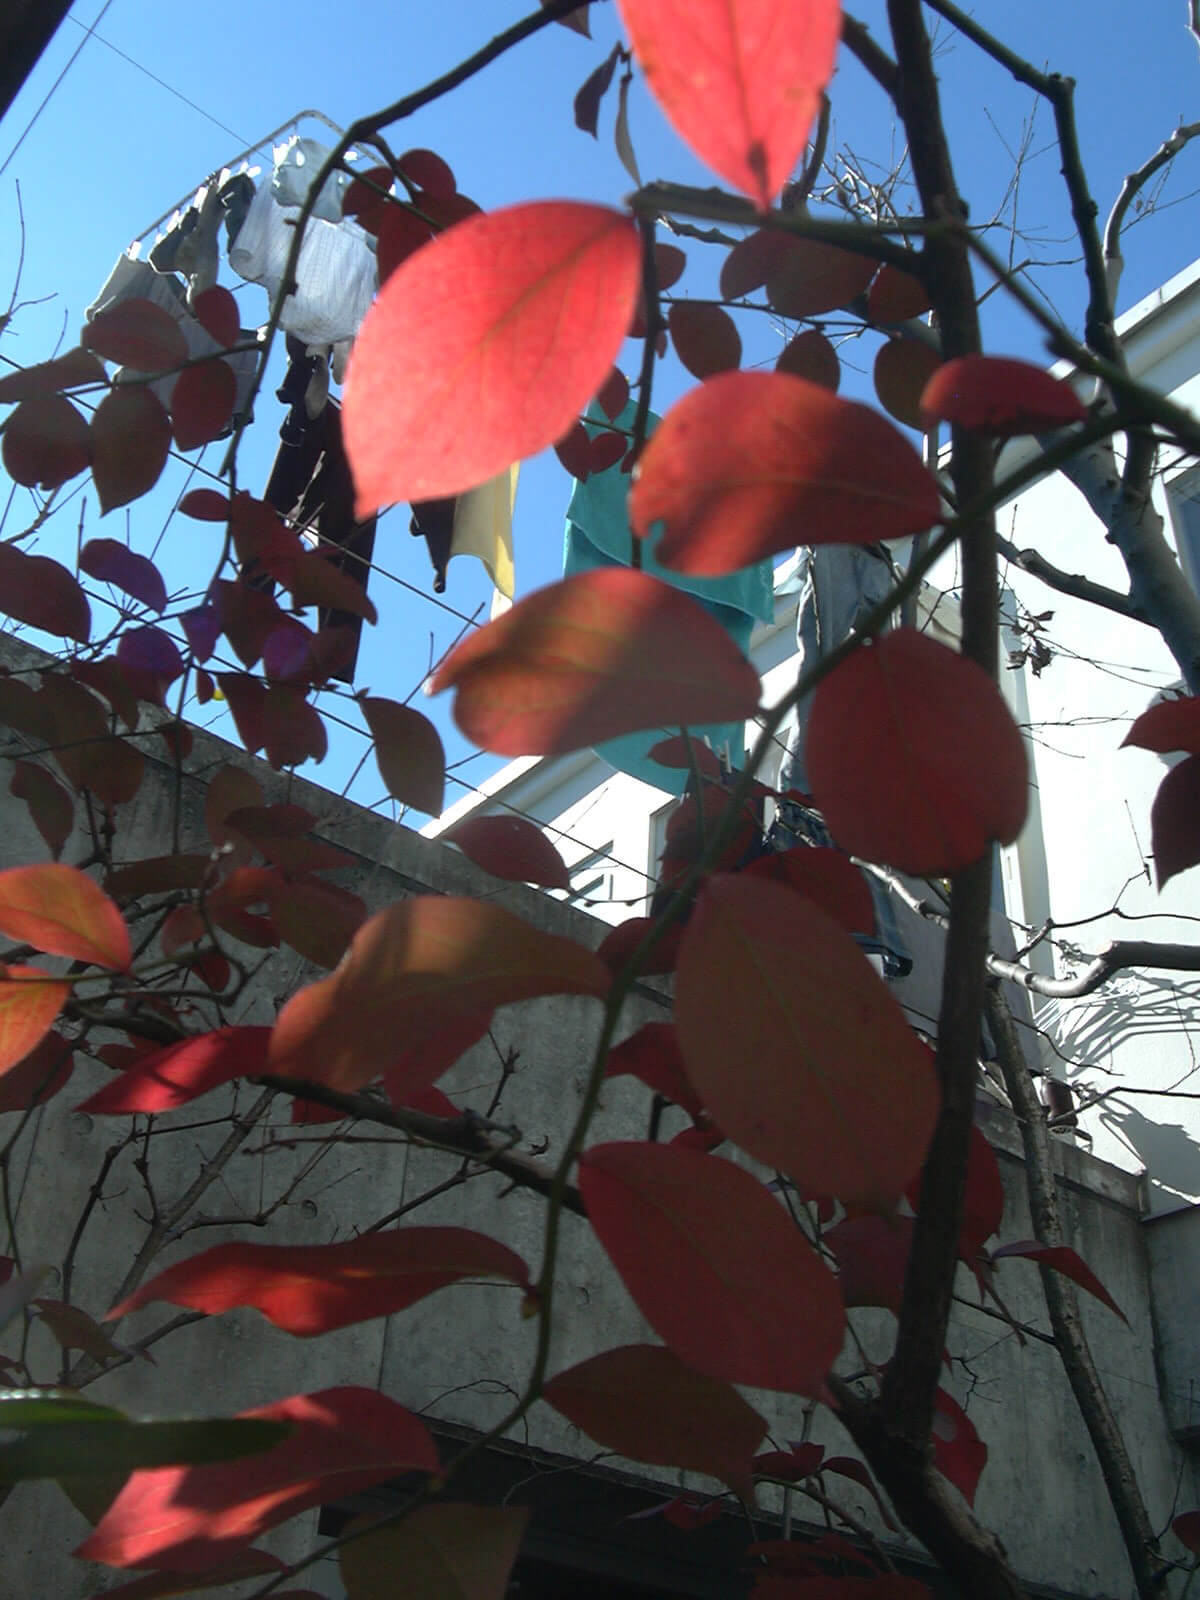 雲一つない冬空に、庭のブルーベリーは赤く透けて、洗濯日和